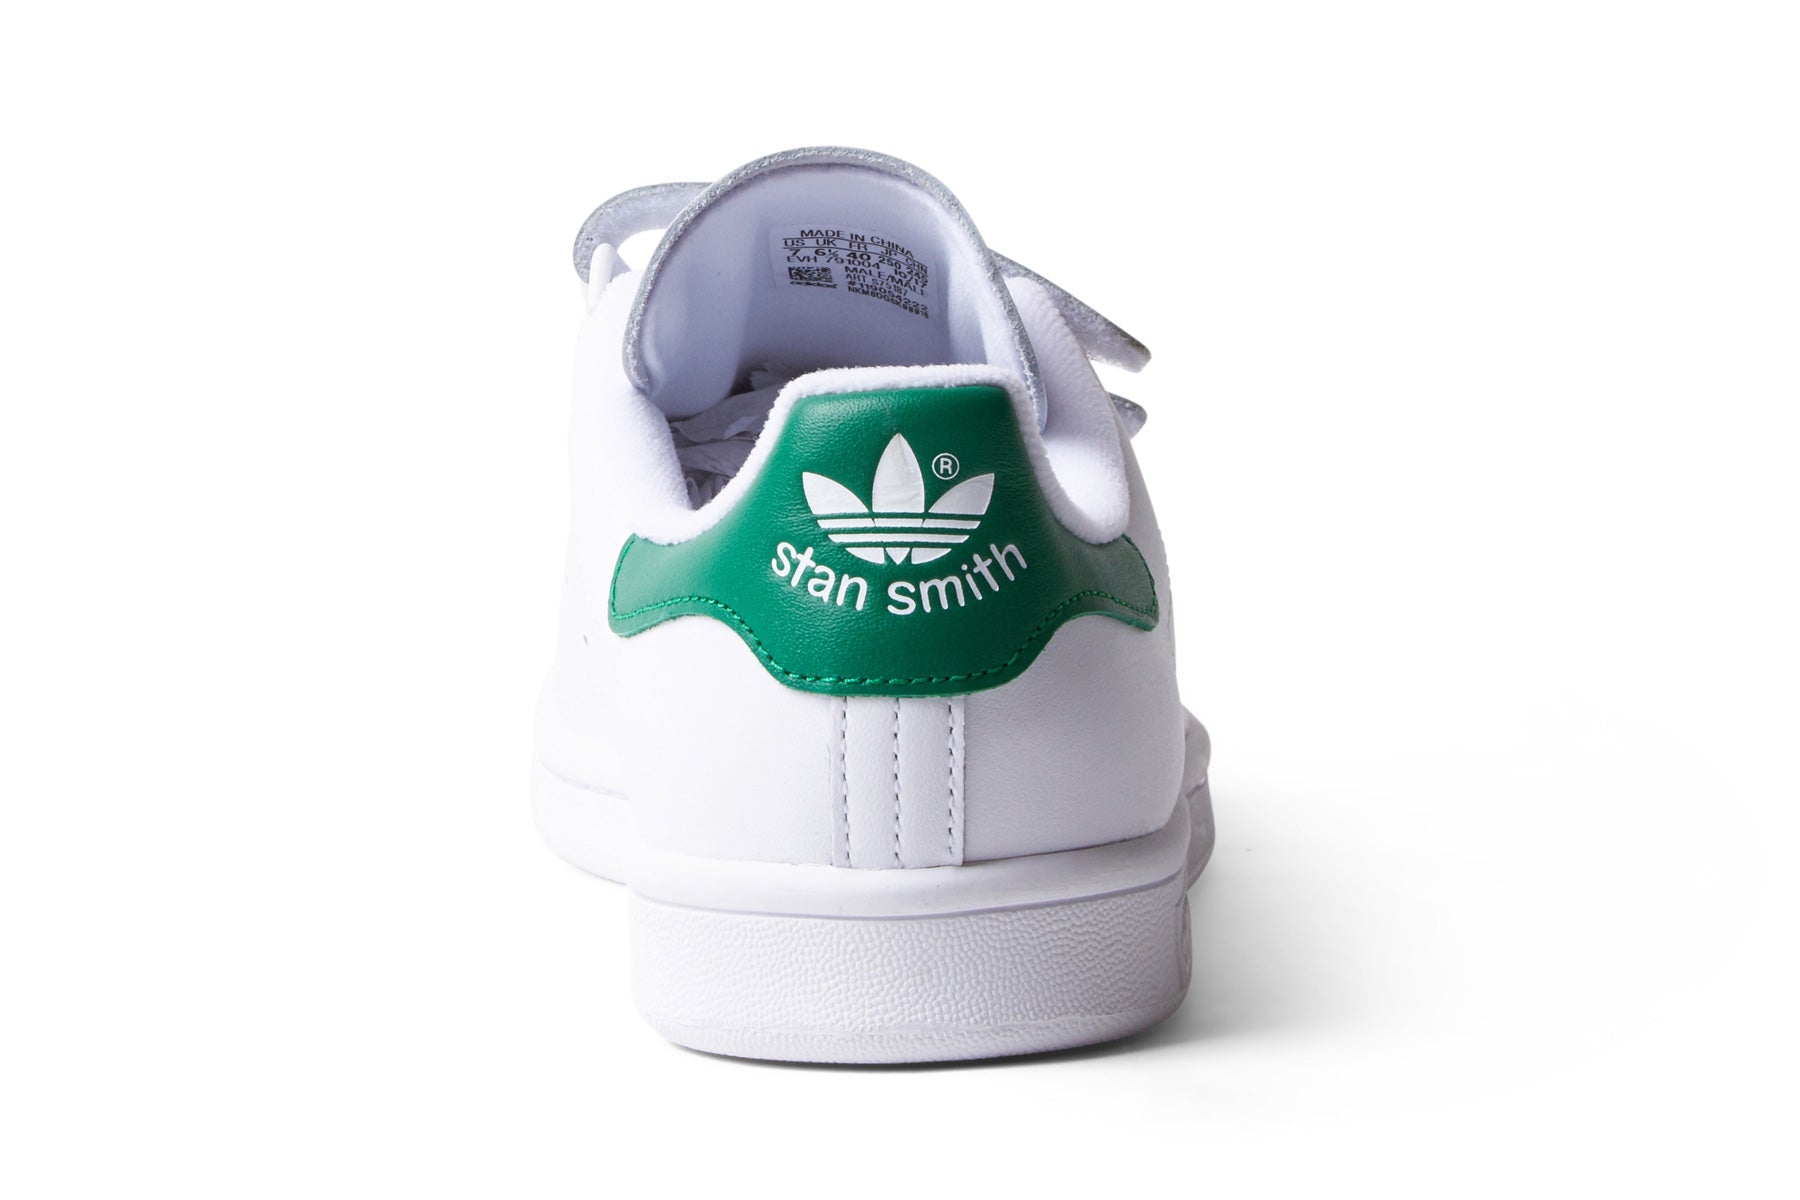 Adidas Stan Smith CF - White / Green